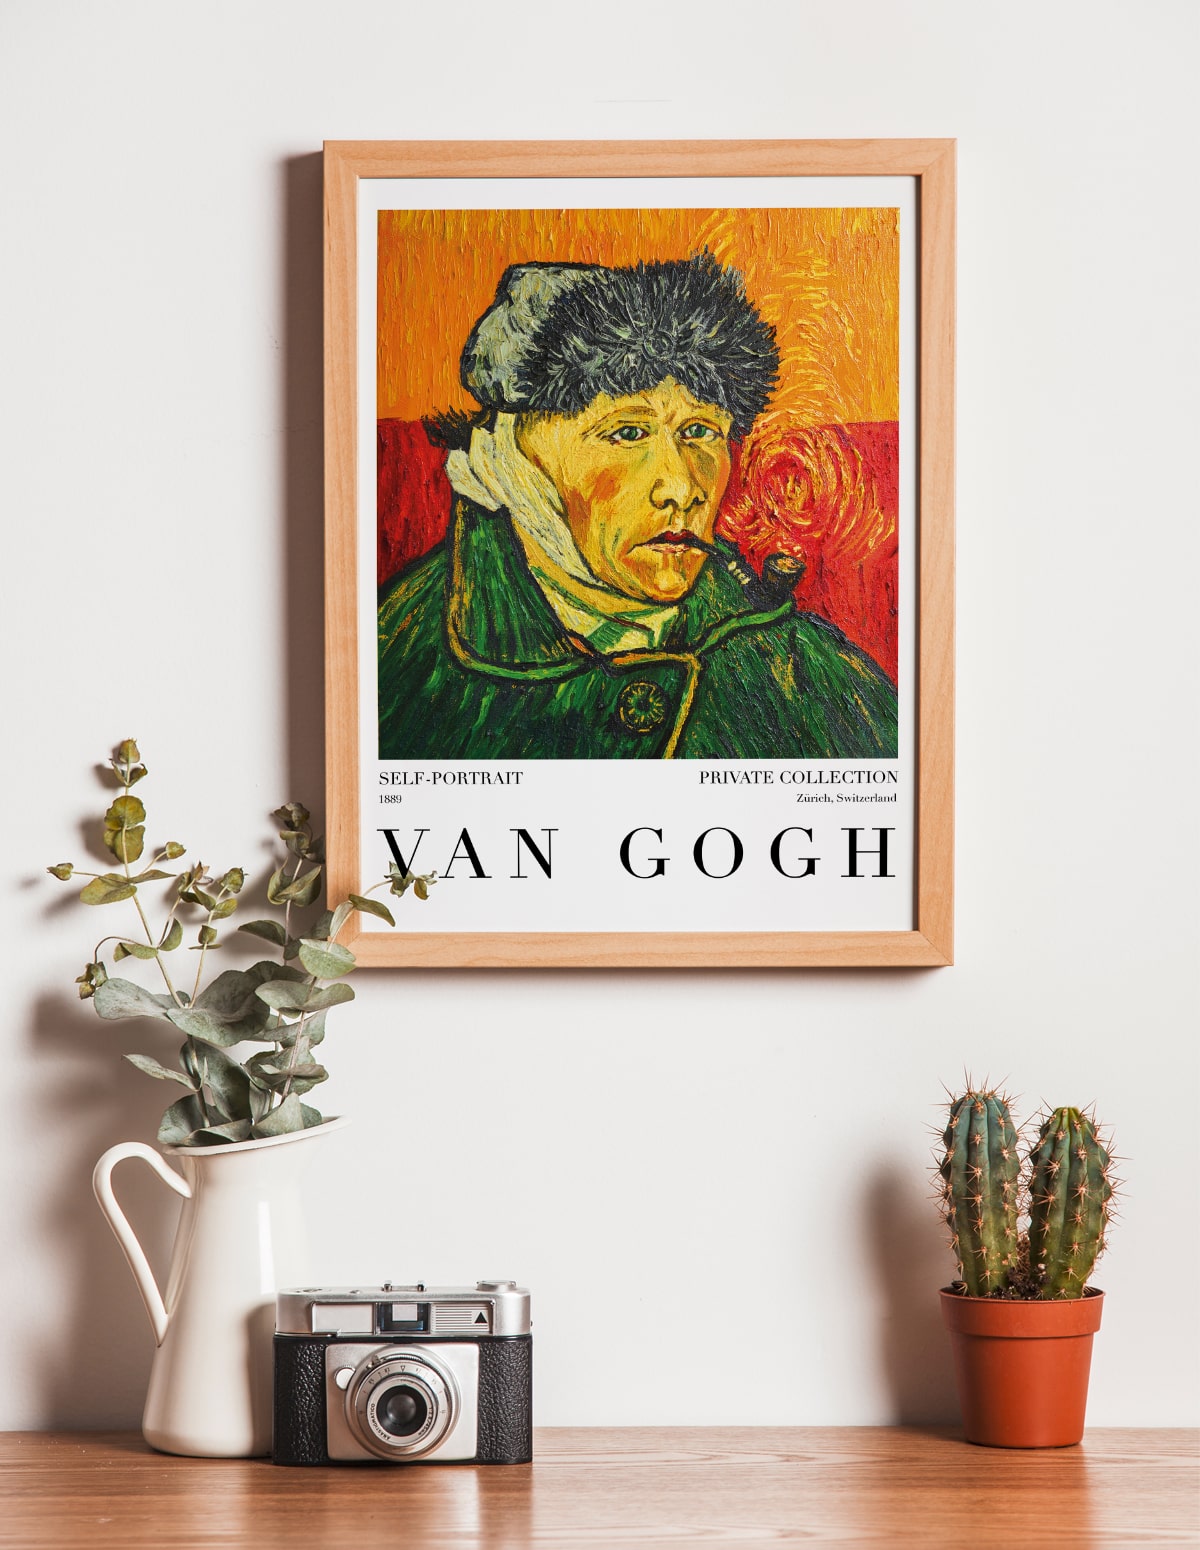 Van Gogh Self Portrait 1890, Vincent van Gogh